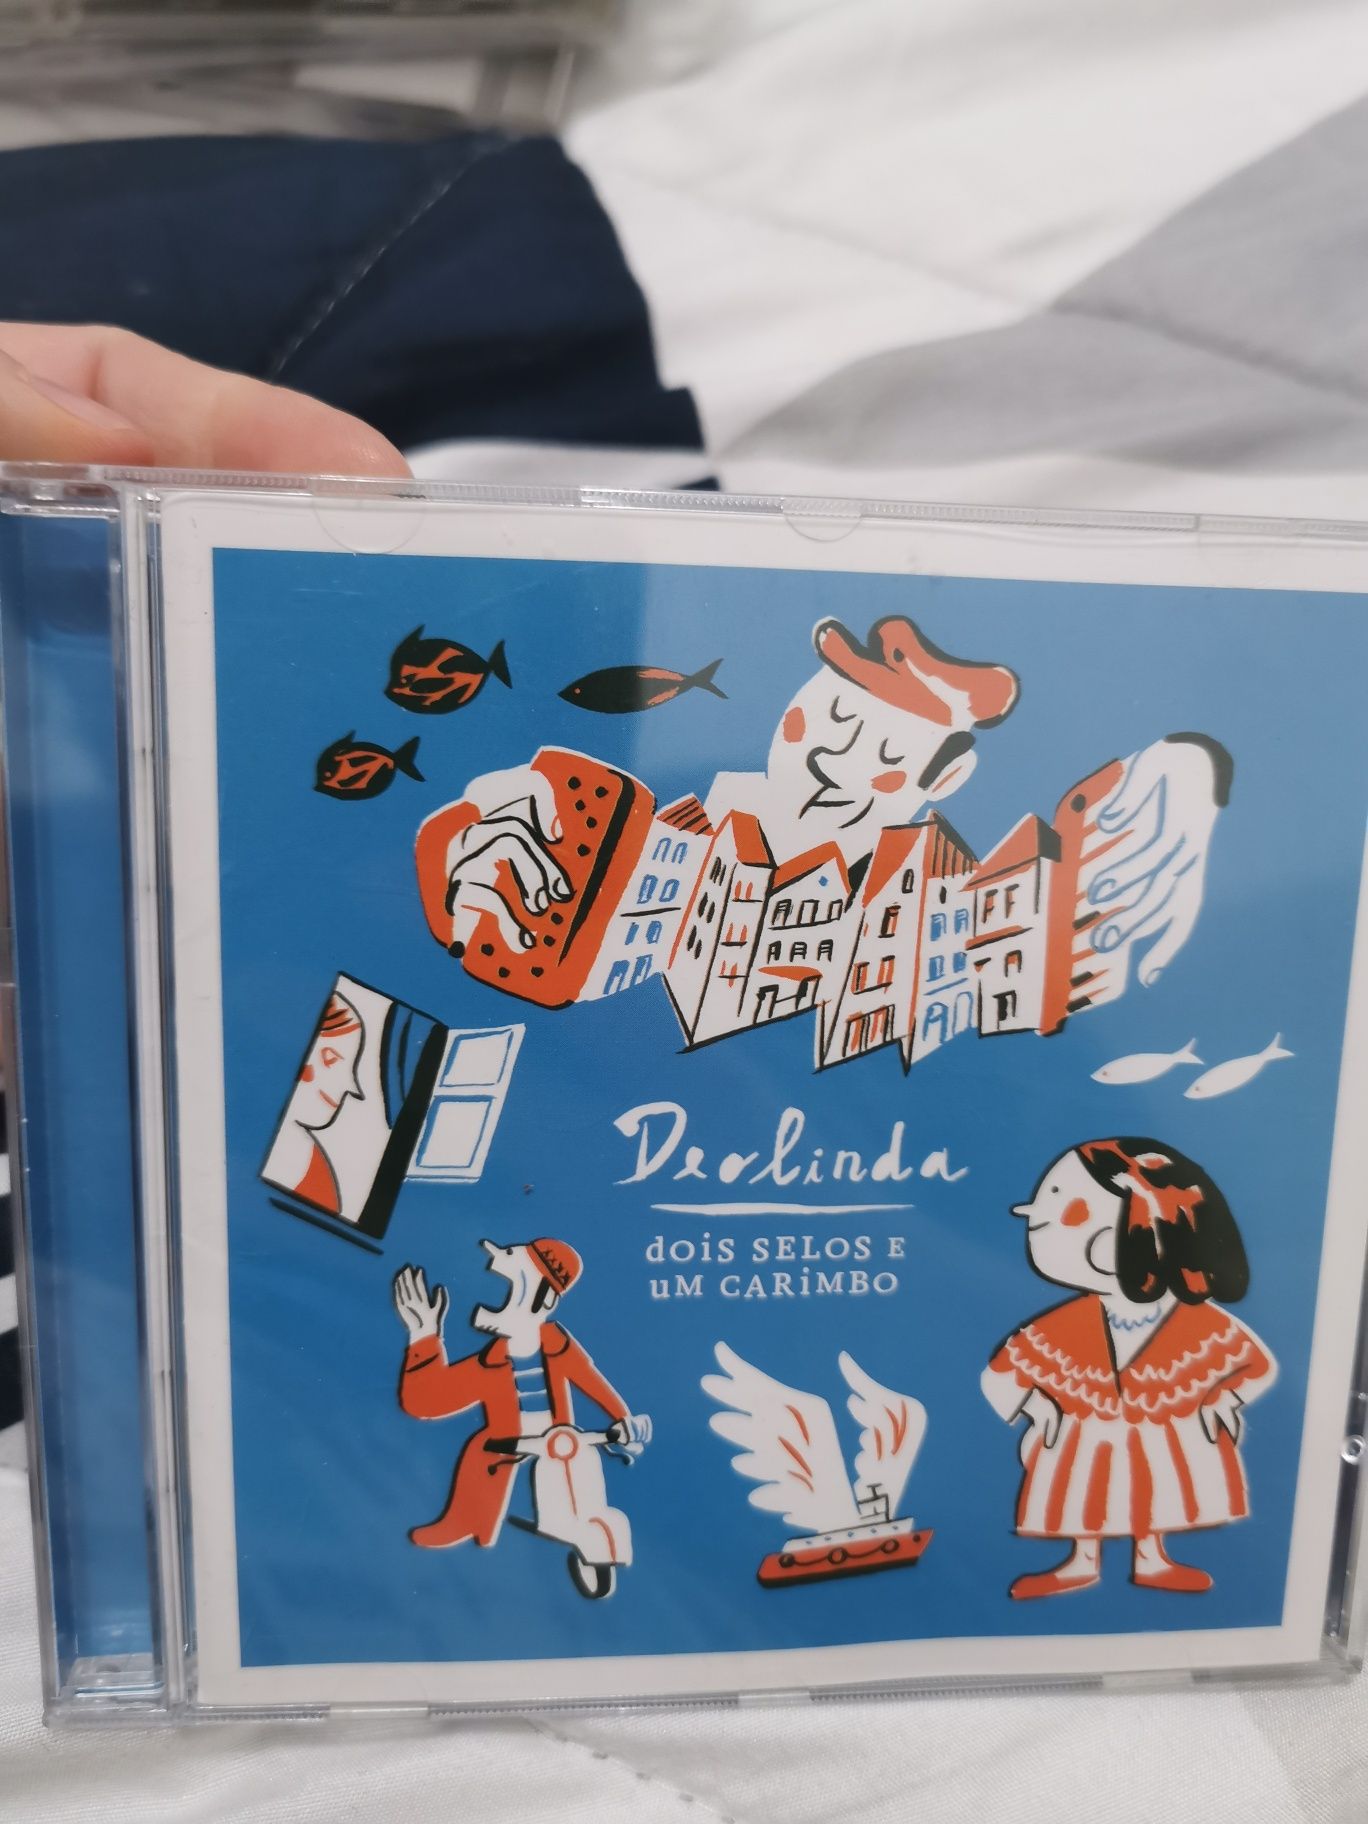 CD Original de música - Deolinda (dois selos e um carimbo)